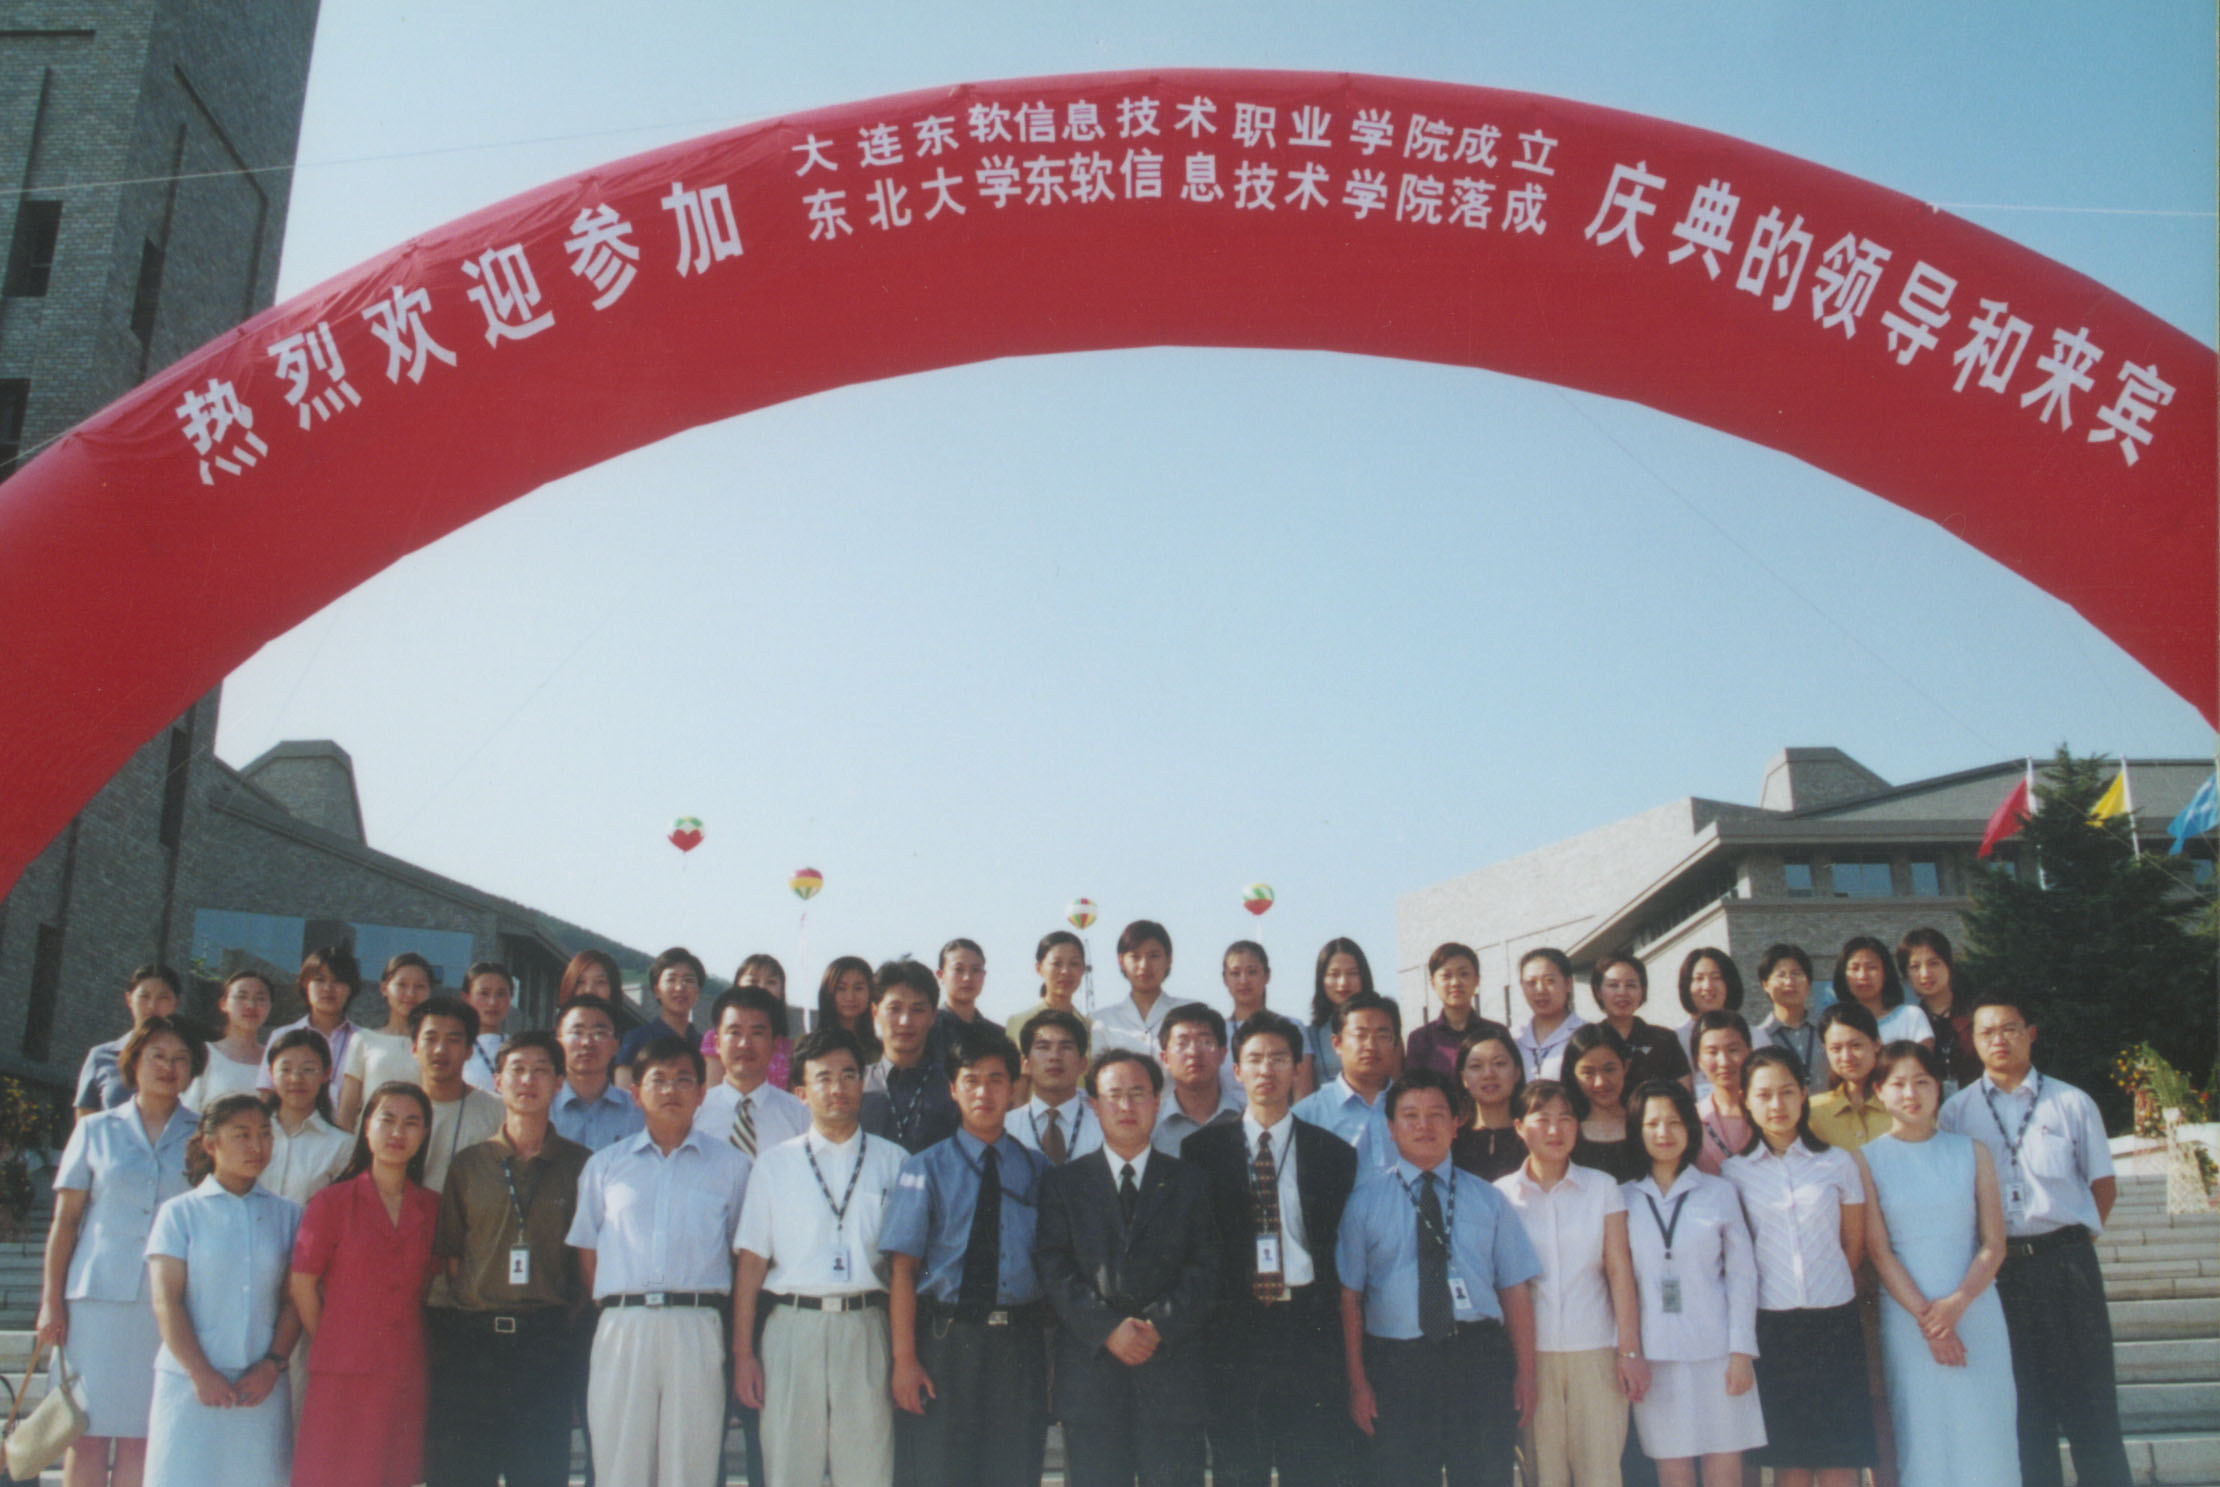 大连东软信息技术职业学院落成典礼（2001年7月6日）